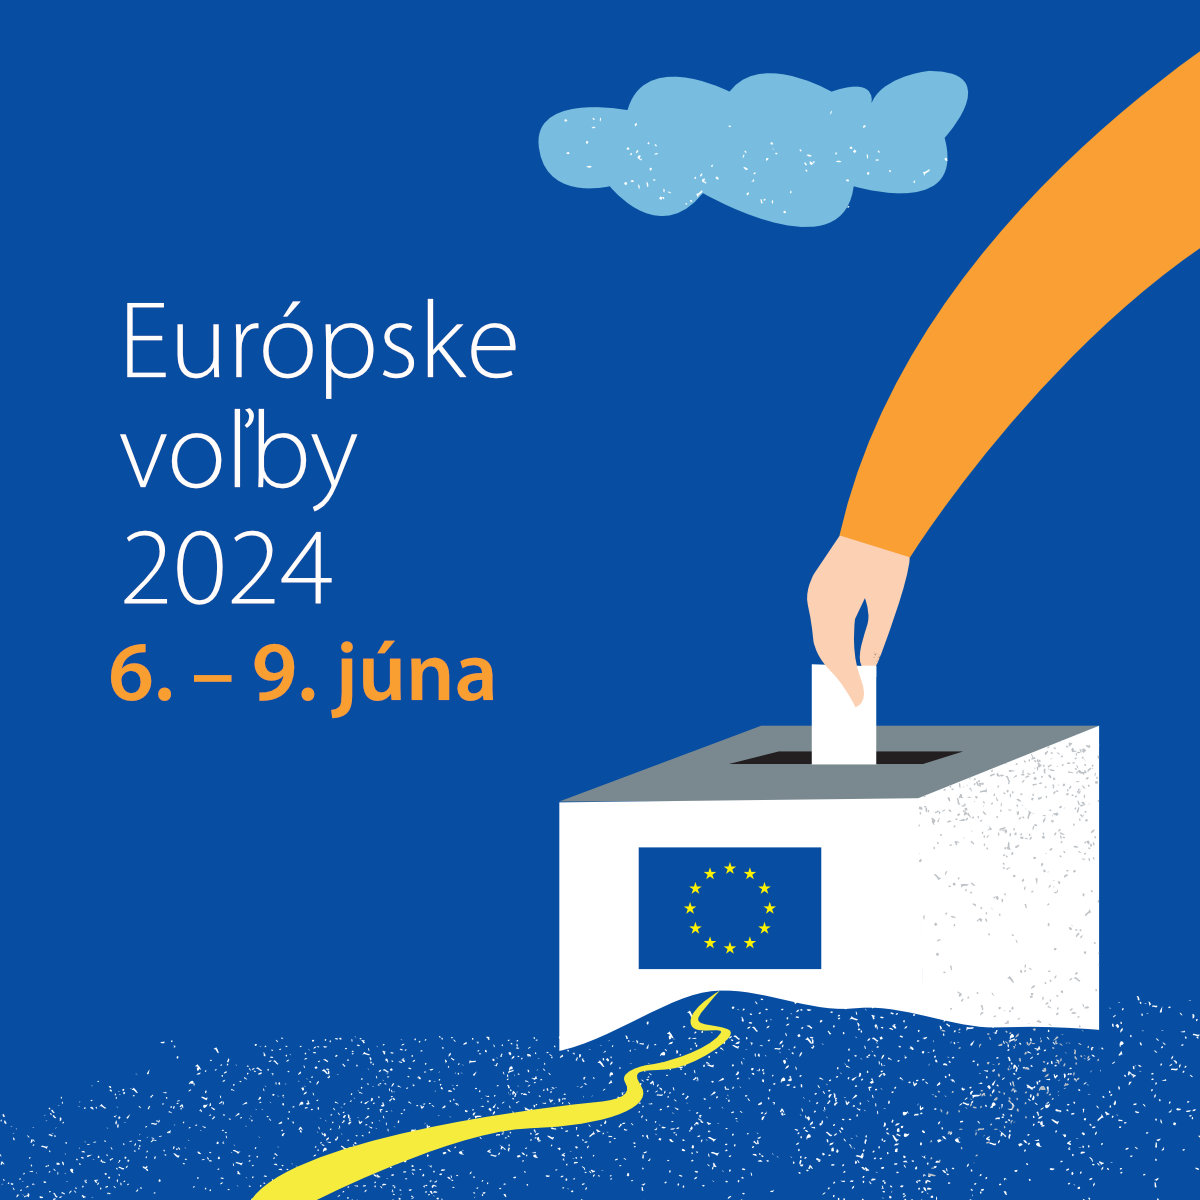 Európske voľby 2024 - Square.jpg